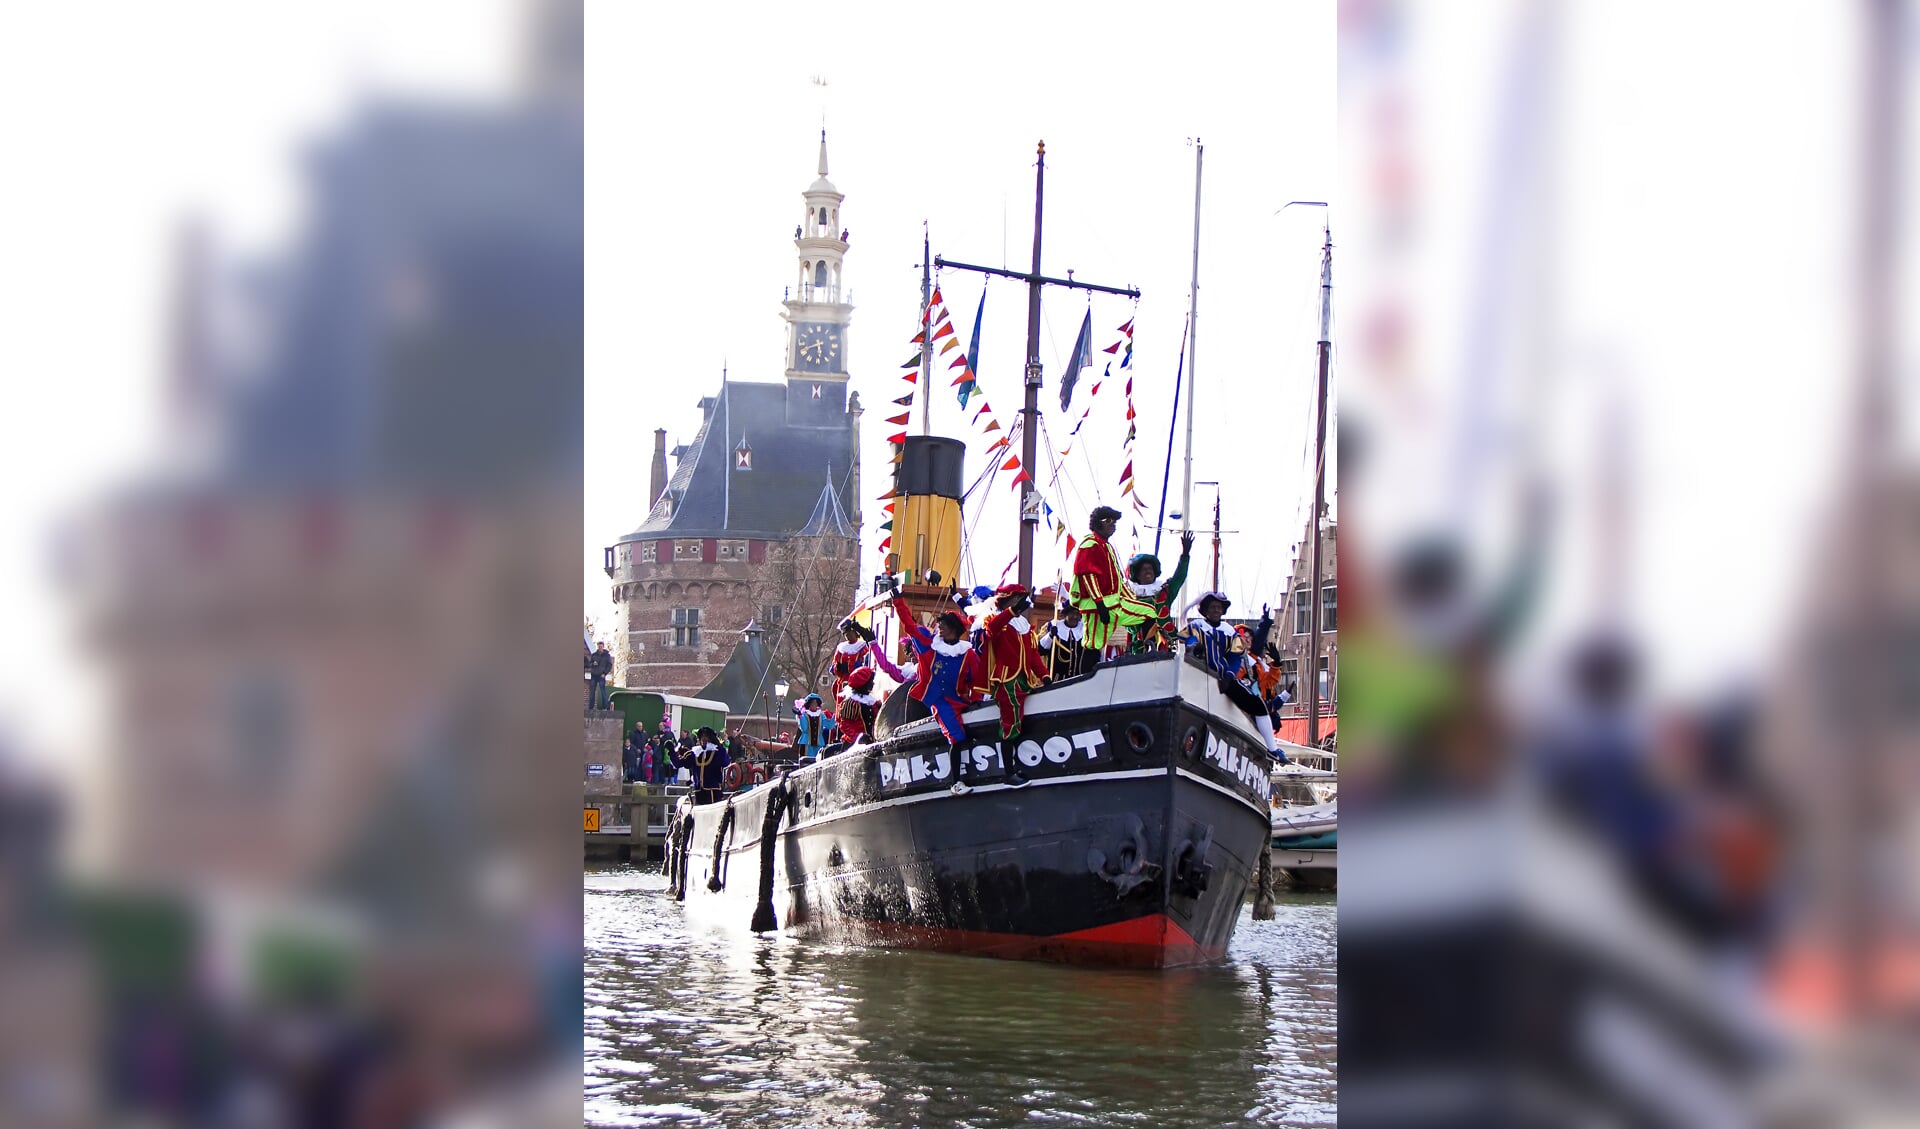 De stoomboot van Sint Nicolaas meert 17 november af in de Hoornse haven. (Foto: aangeleverd)